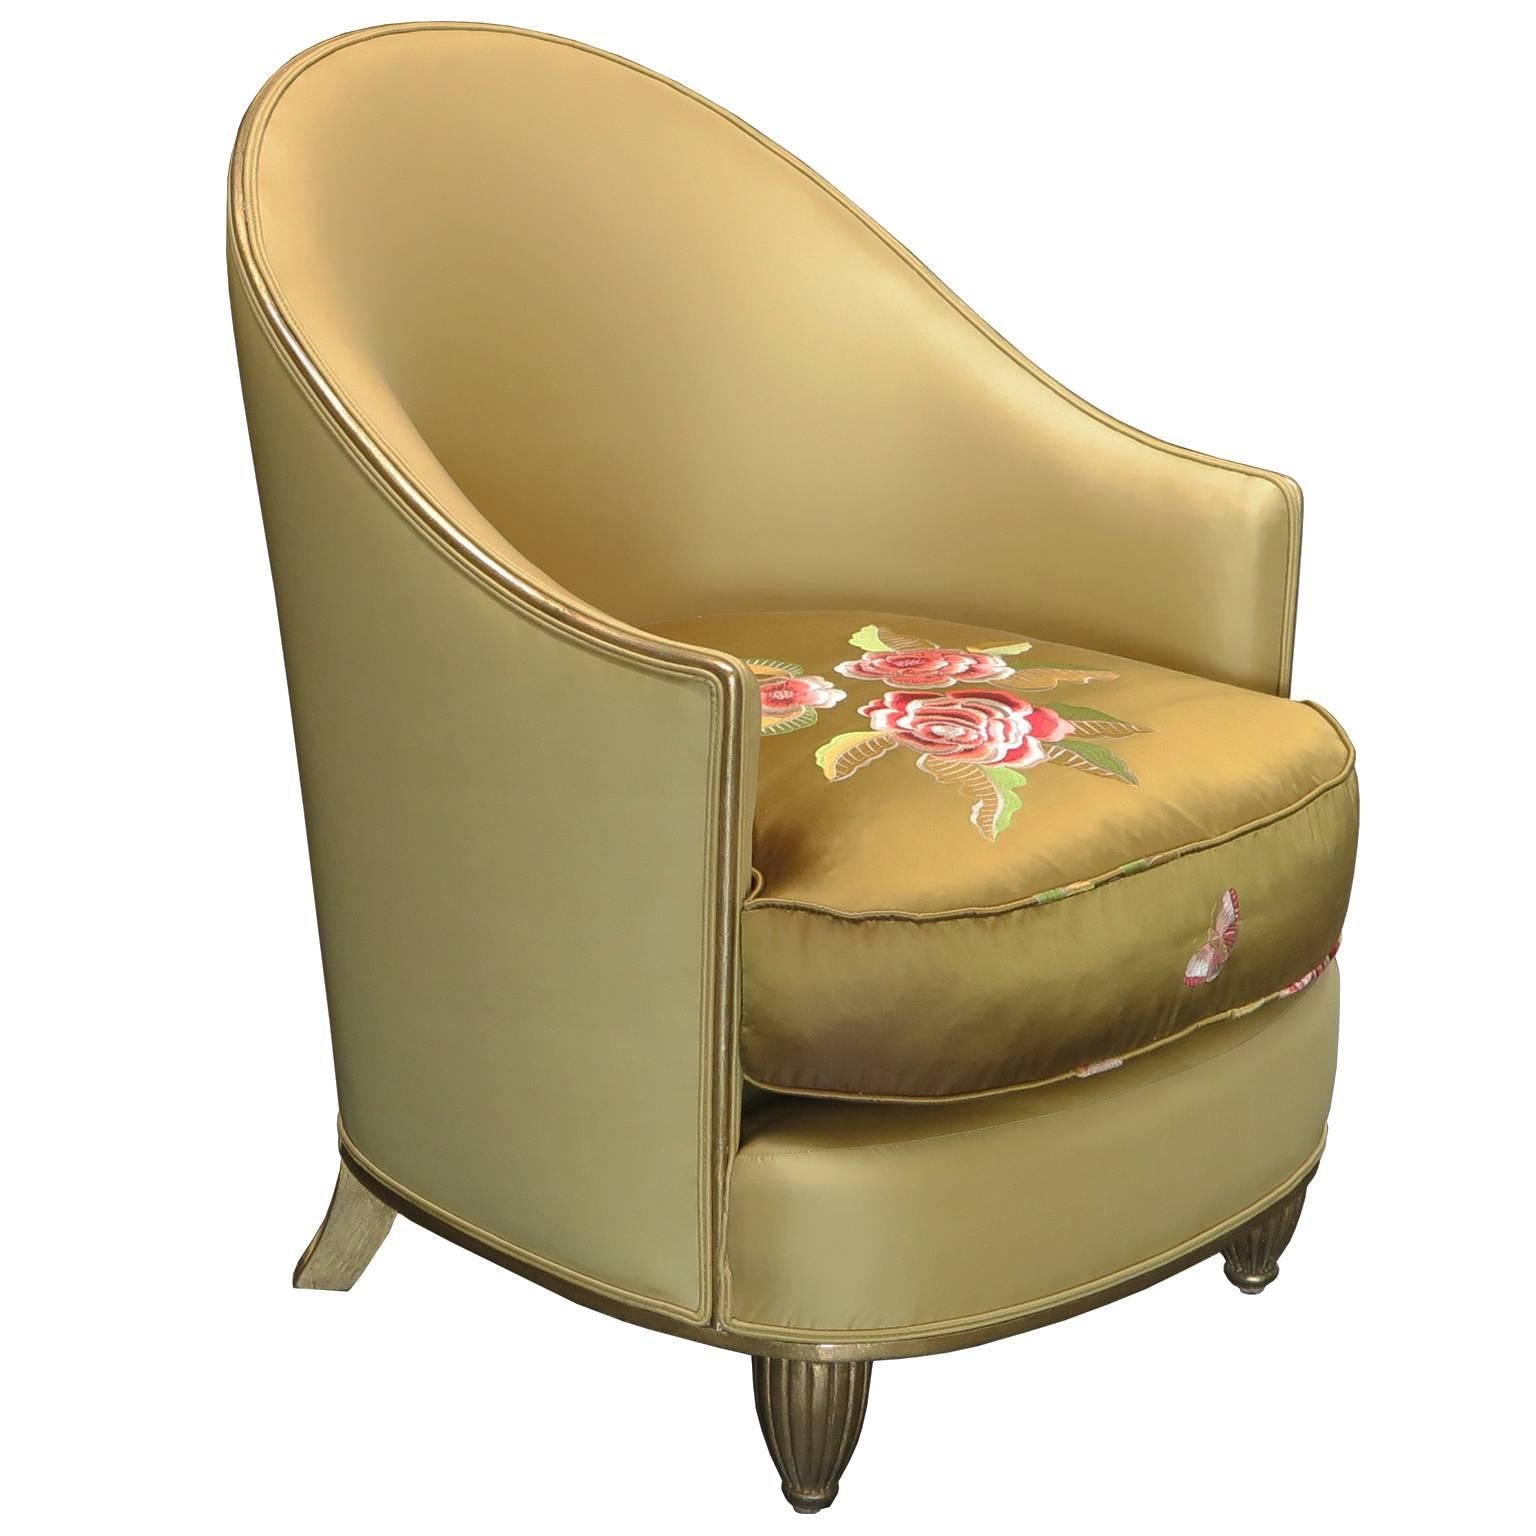 Schönes Paar Art-Déco-Sessel mit einem geschwungenen Rahmen aus antikem Blattgold. Die Stühle sind mit olivgrüner Seide gepolstert, die dunkelolivenfarbenen Sitzkissen haben handgestickte Blumendetails. Die vergoldeten Vorderbeine haben ein